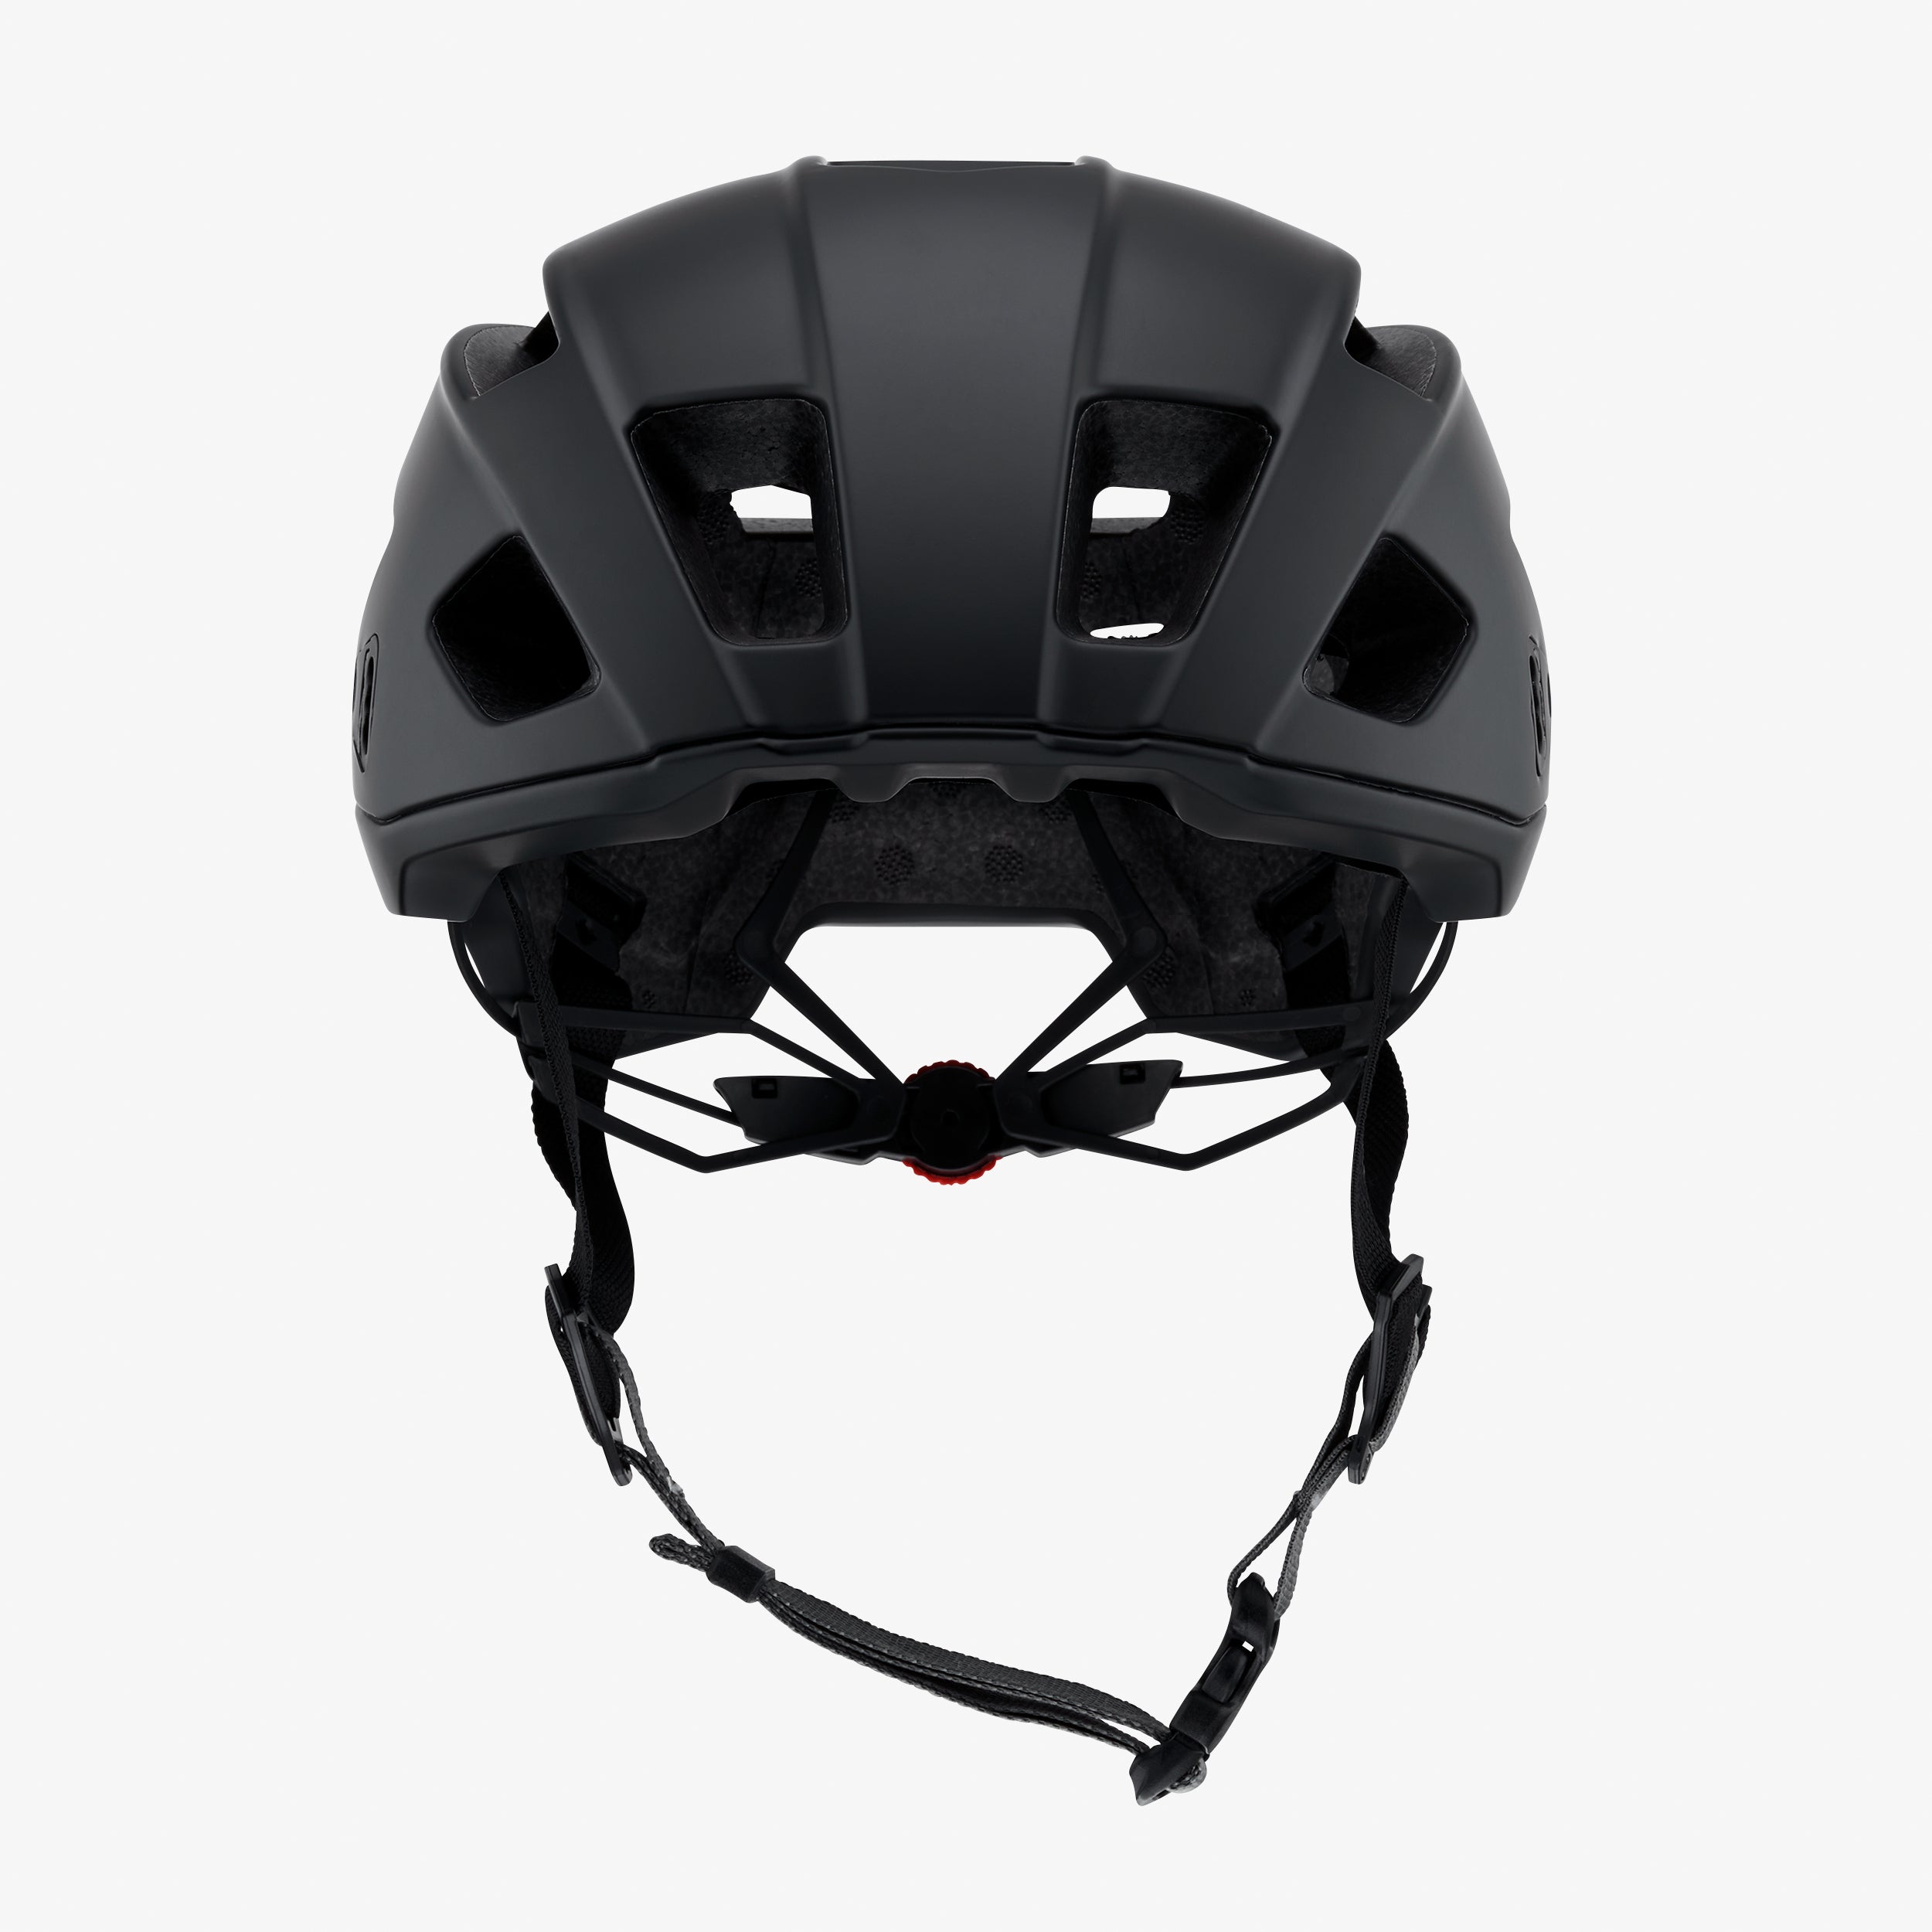 ALTIS Gravel Helmet Black CPSC/CE